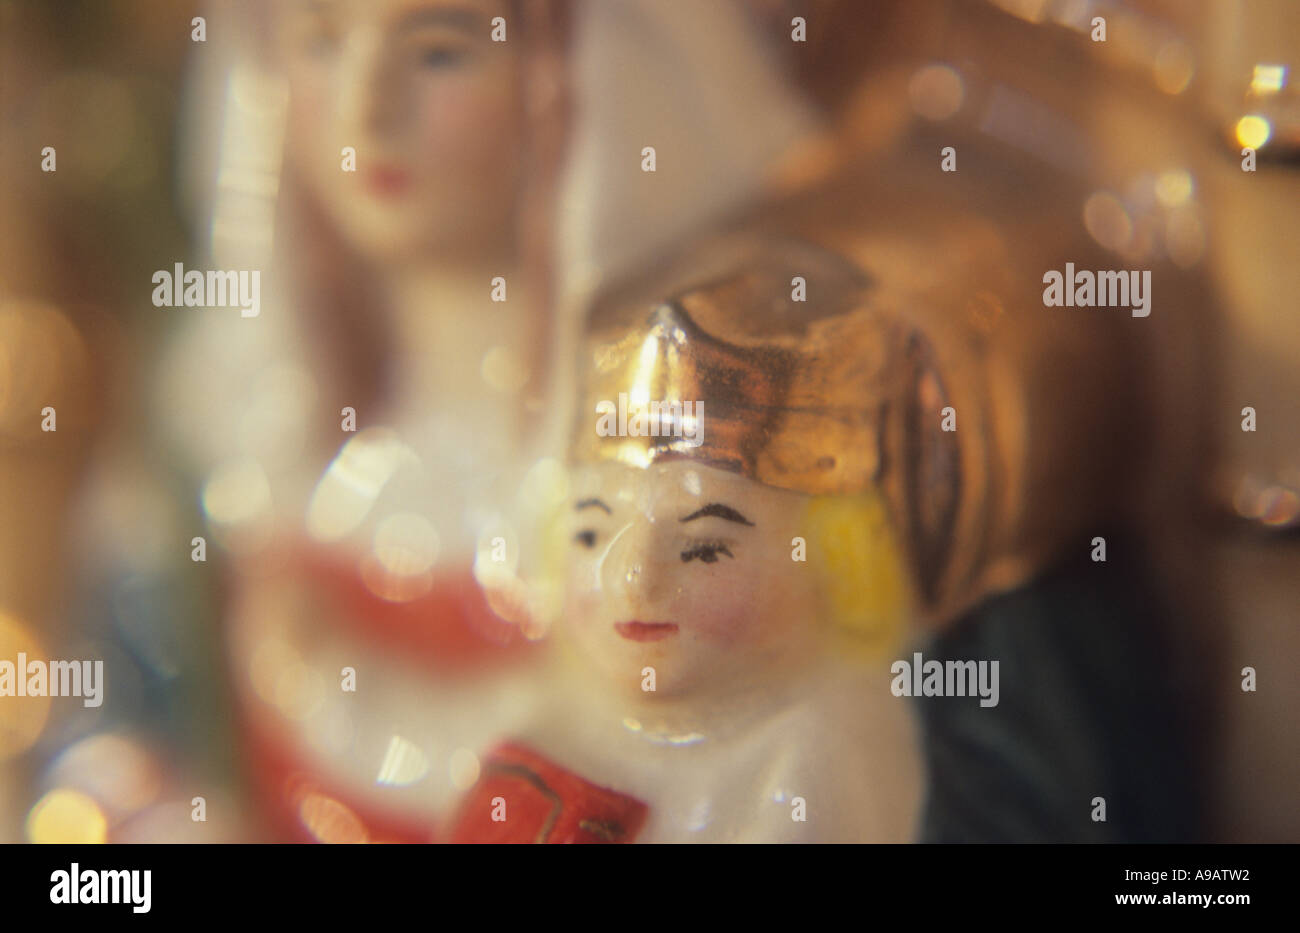 Nahaufnahme eines China-Modells der Jungfrau Maria auf einem Thron sitzend, mit einem gekrönten Kleinkind Jesu Christi in warmes Licht Stockfoto